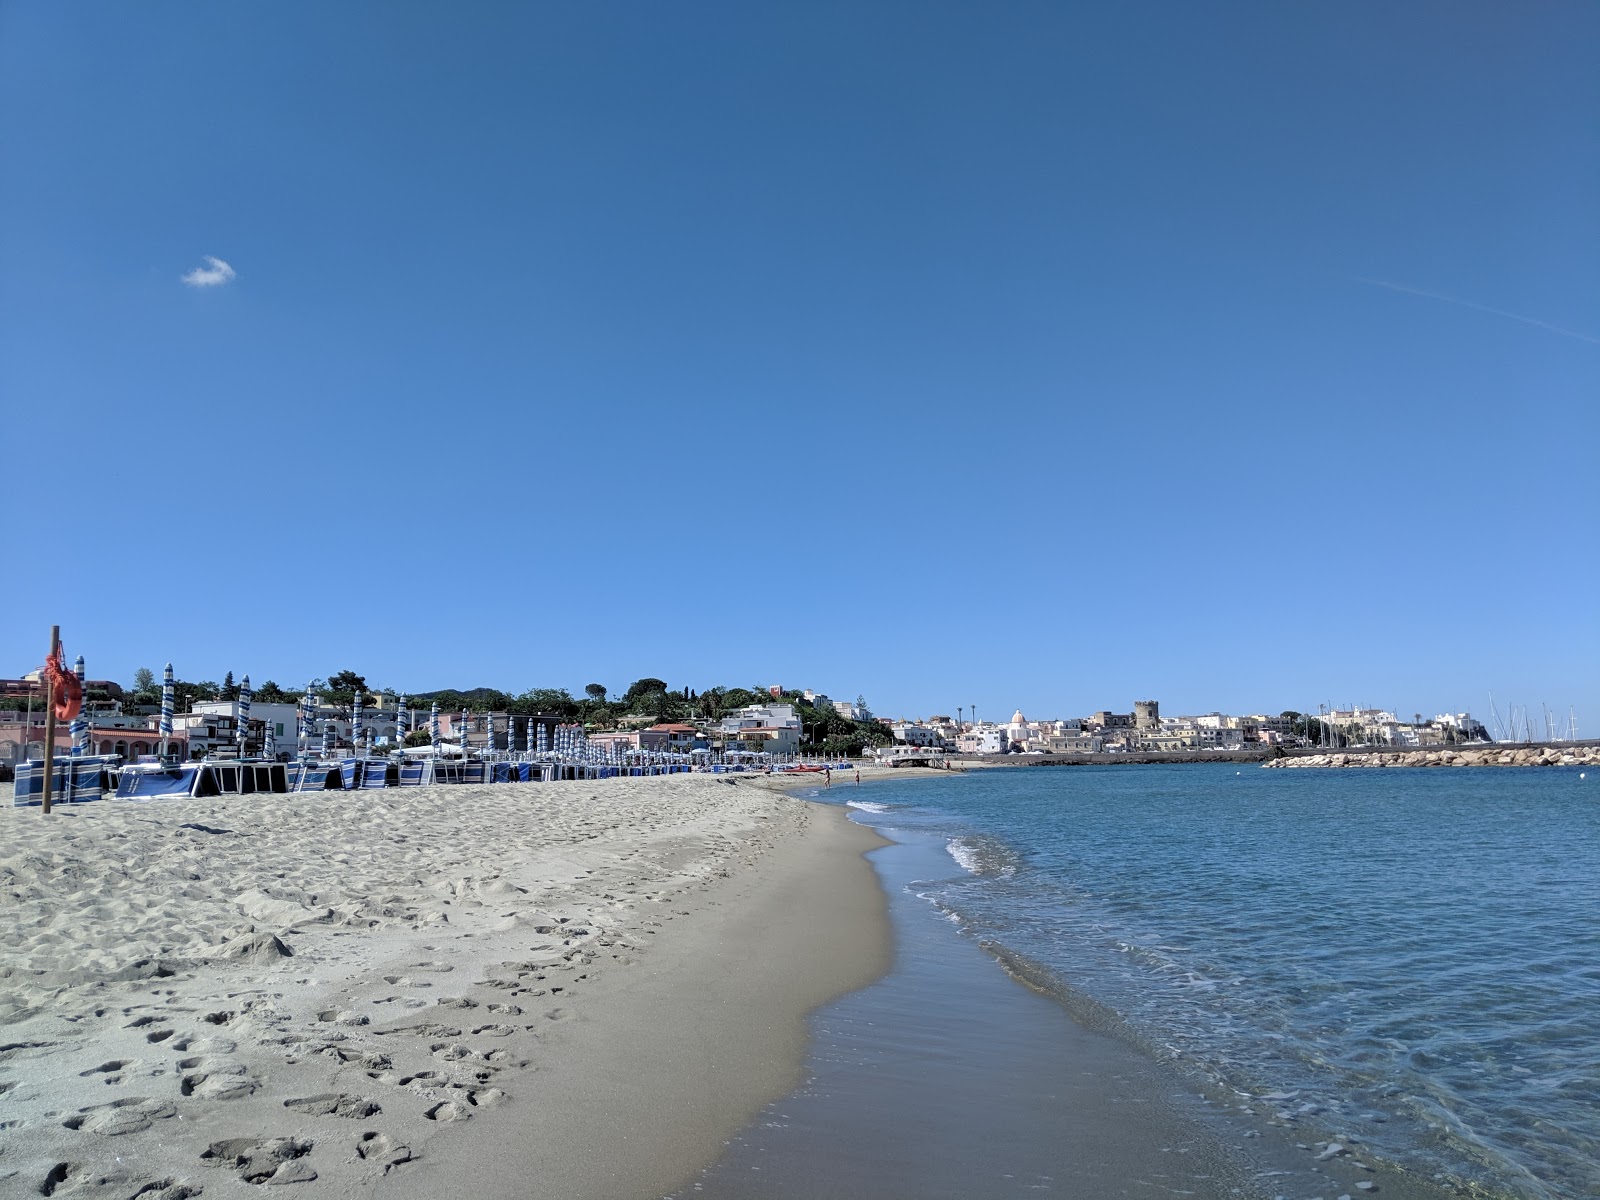 Photo of Spiaggia della Chiaia with bright fine sand surface